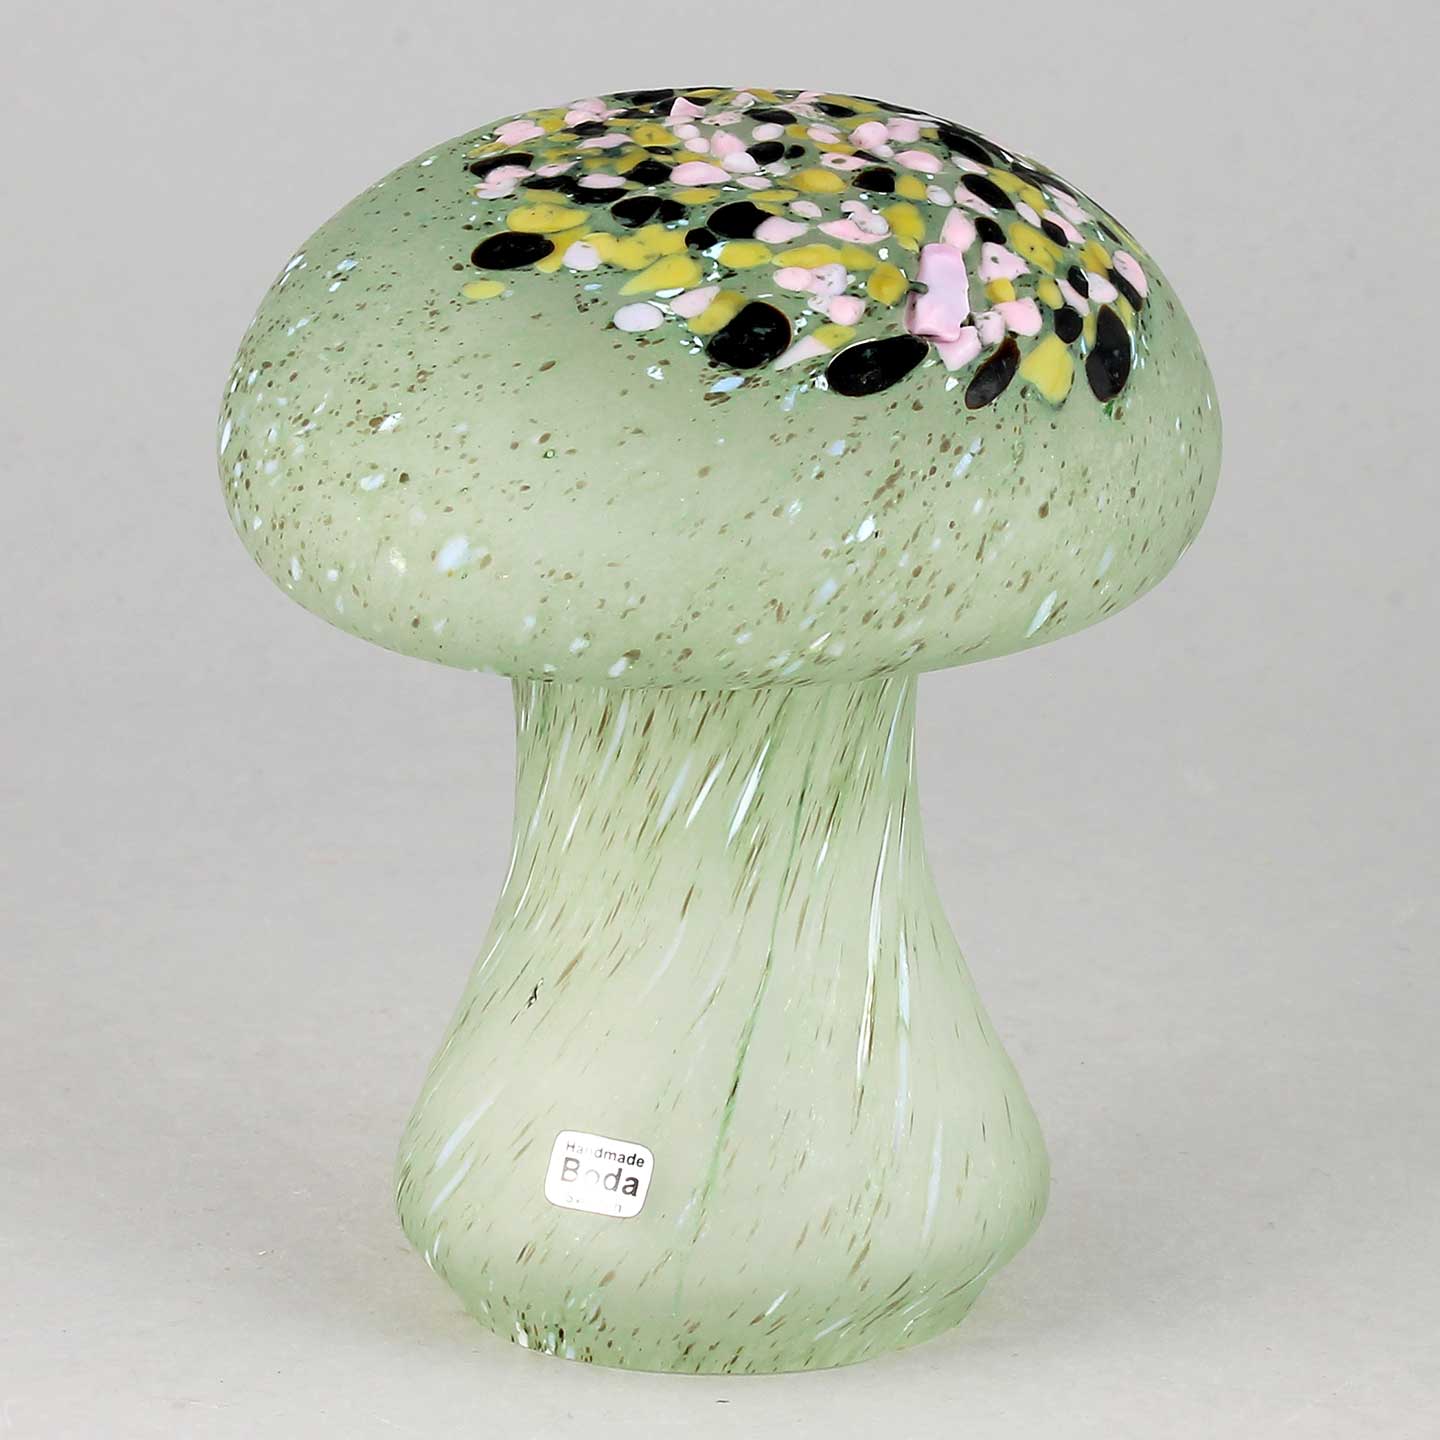 Monica Backström – Mushrooms from Kosta Boda